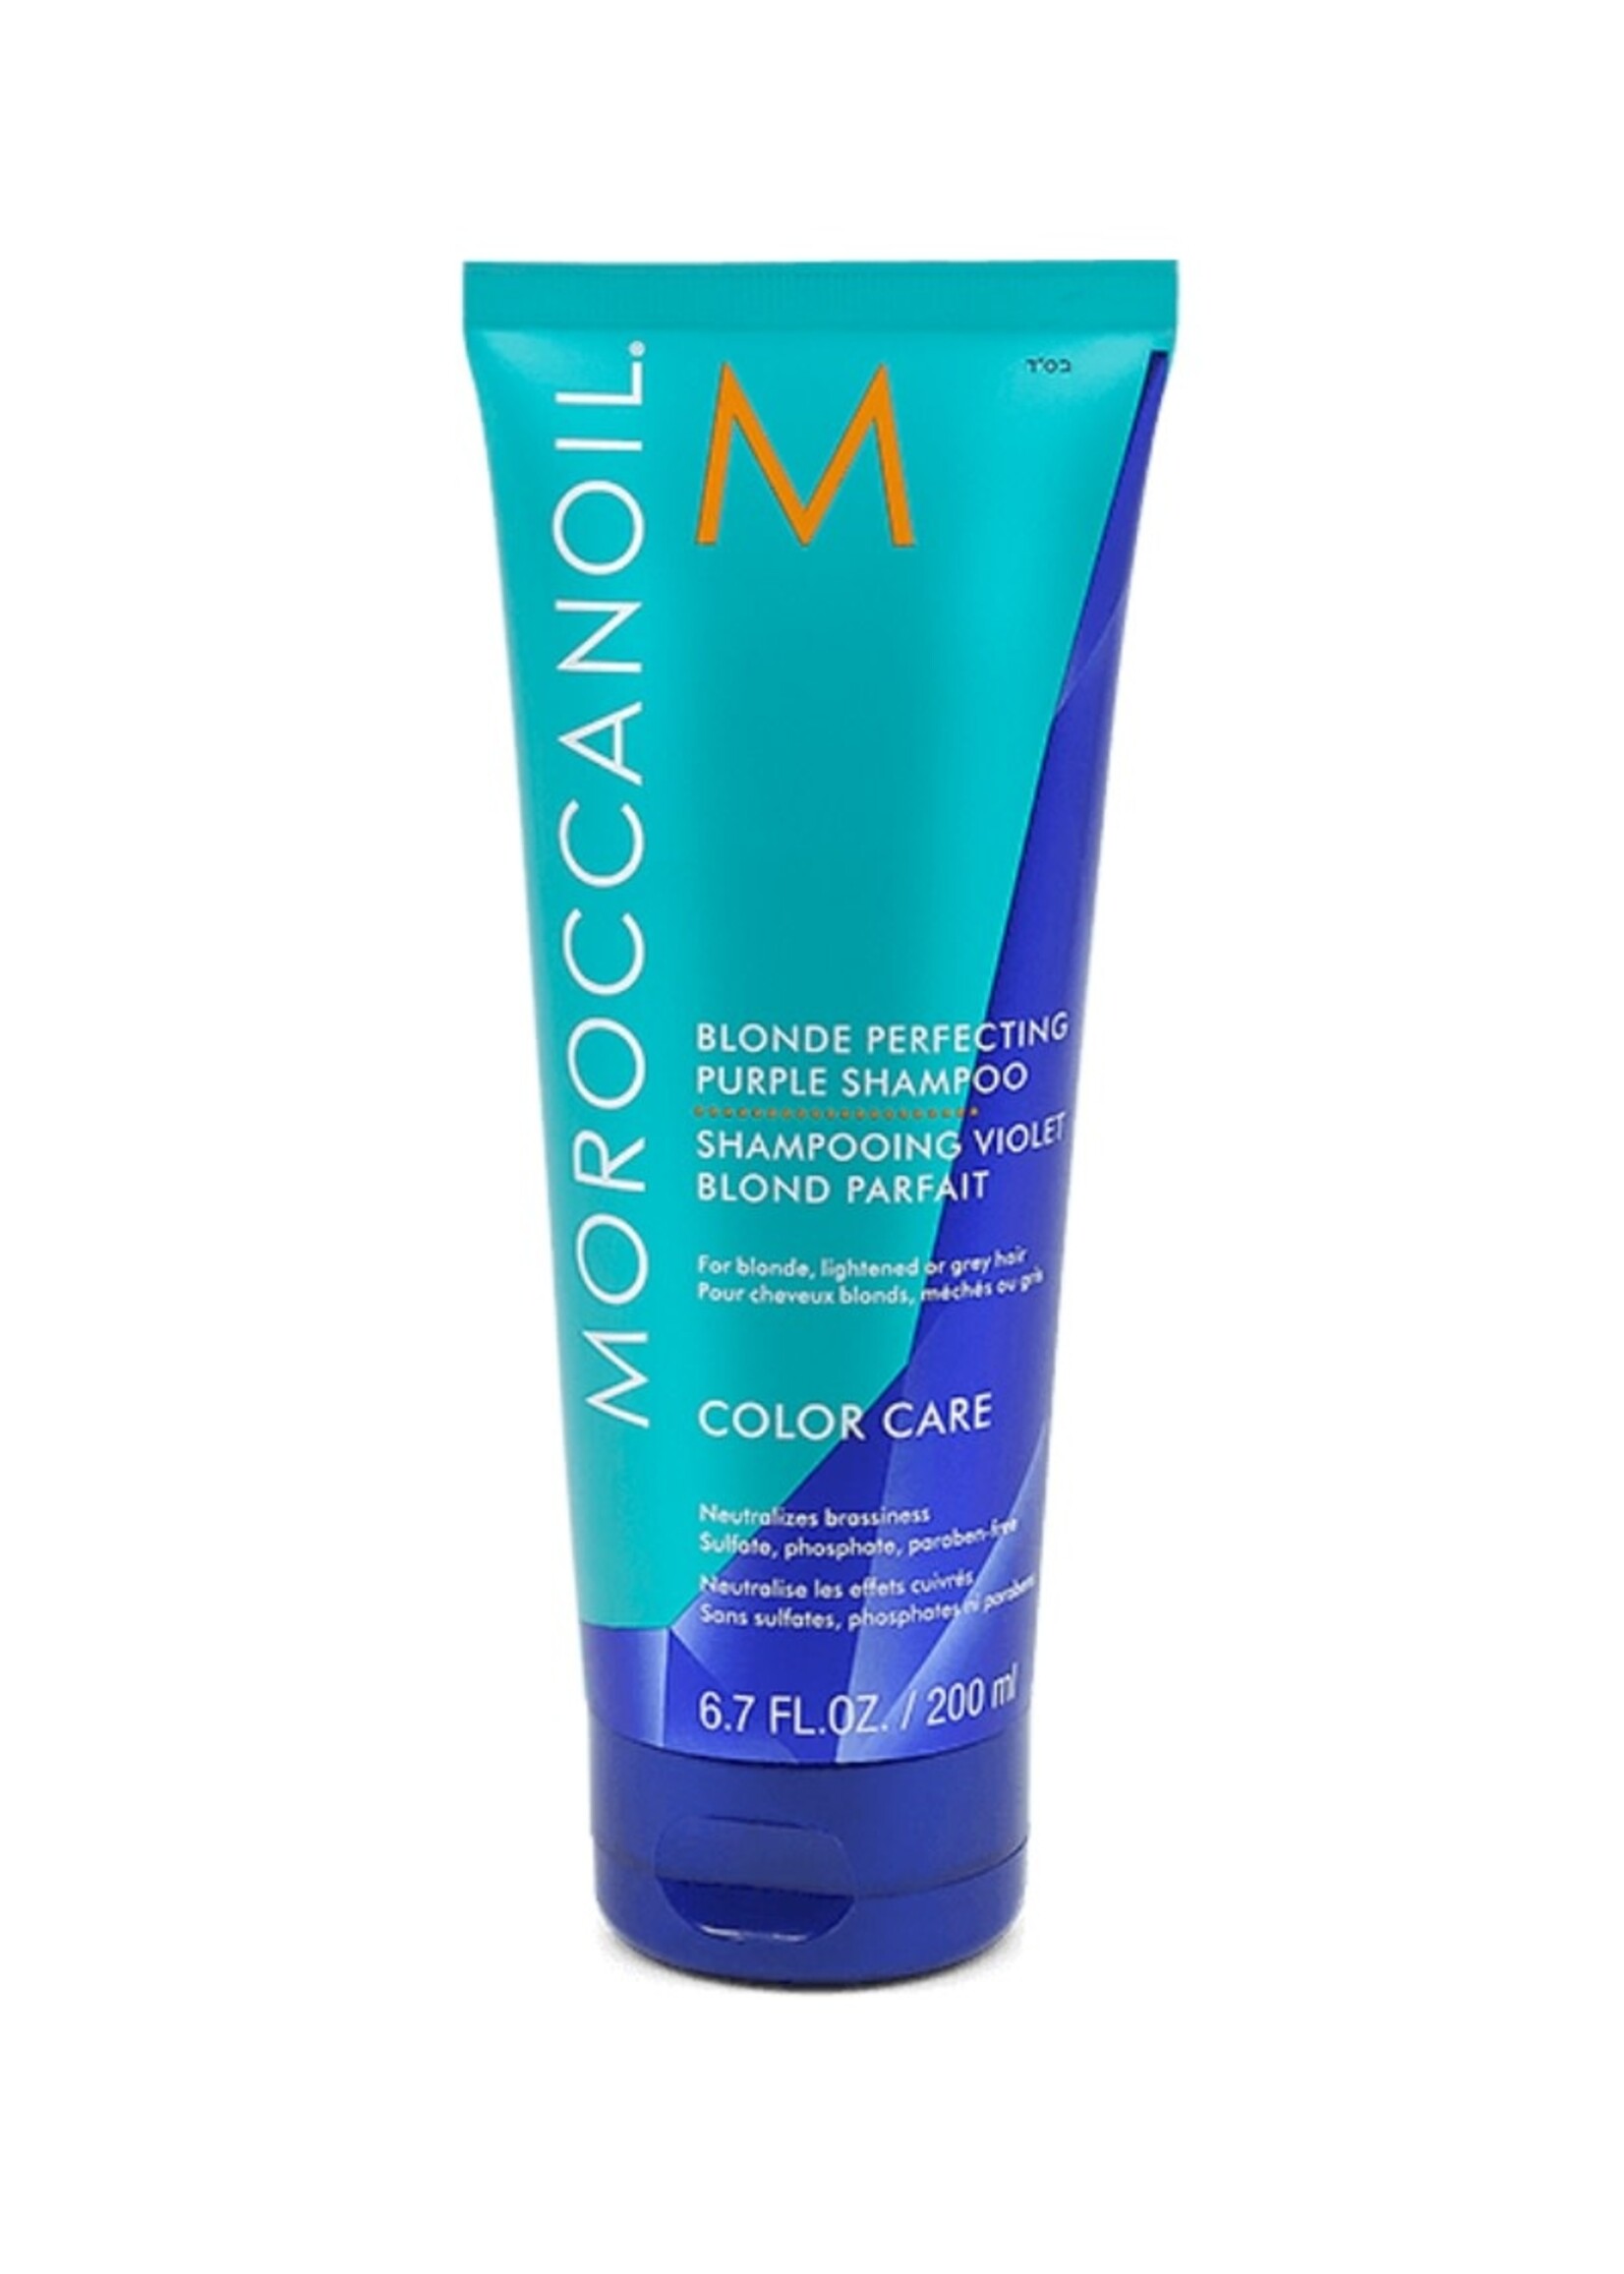 Moroccanoil Moroccanoil Blonde Perfecting Purple Shampoo 200ml